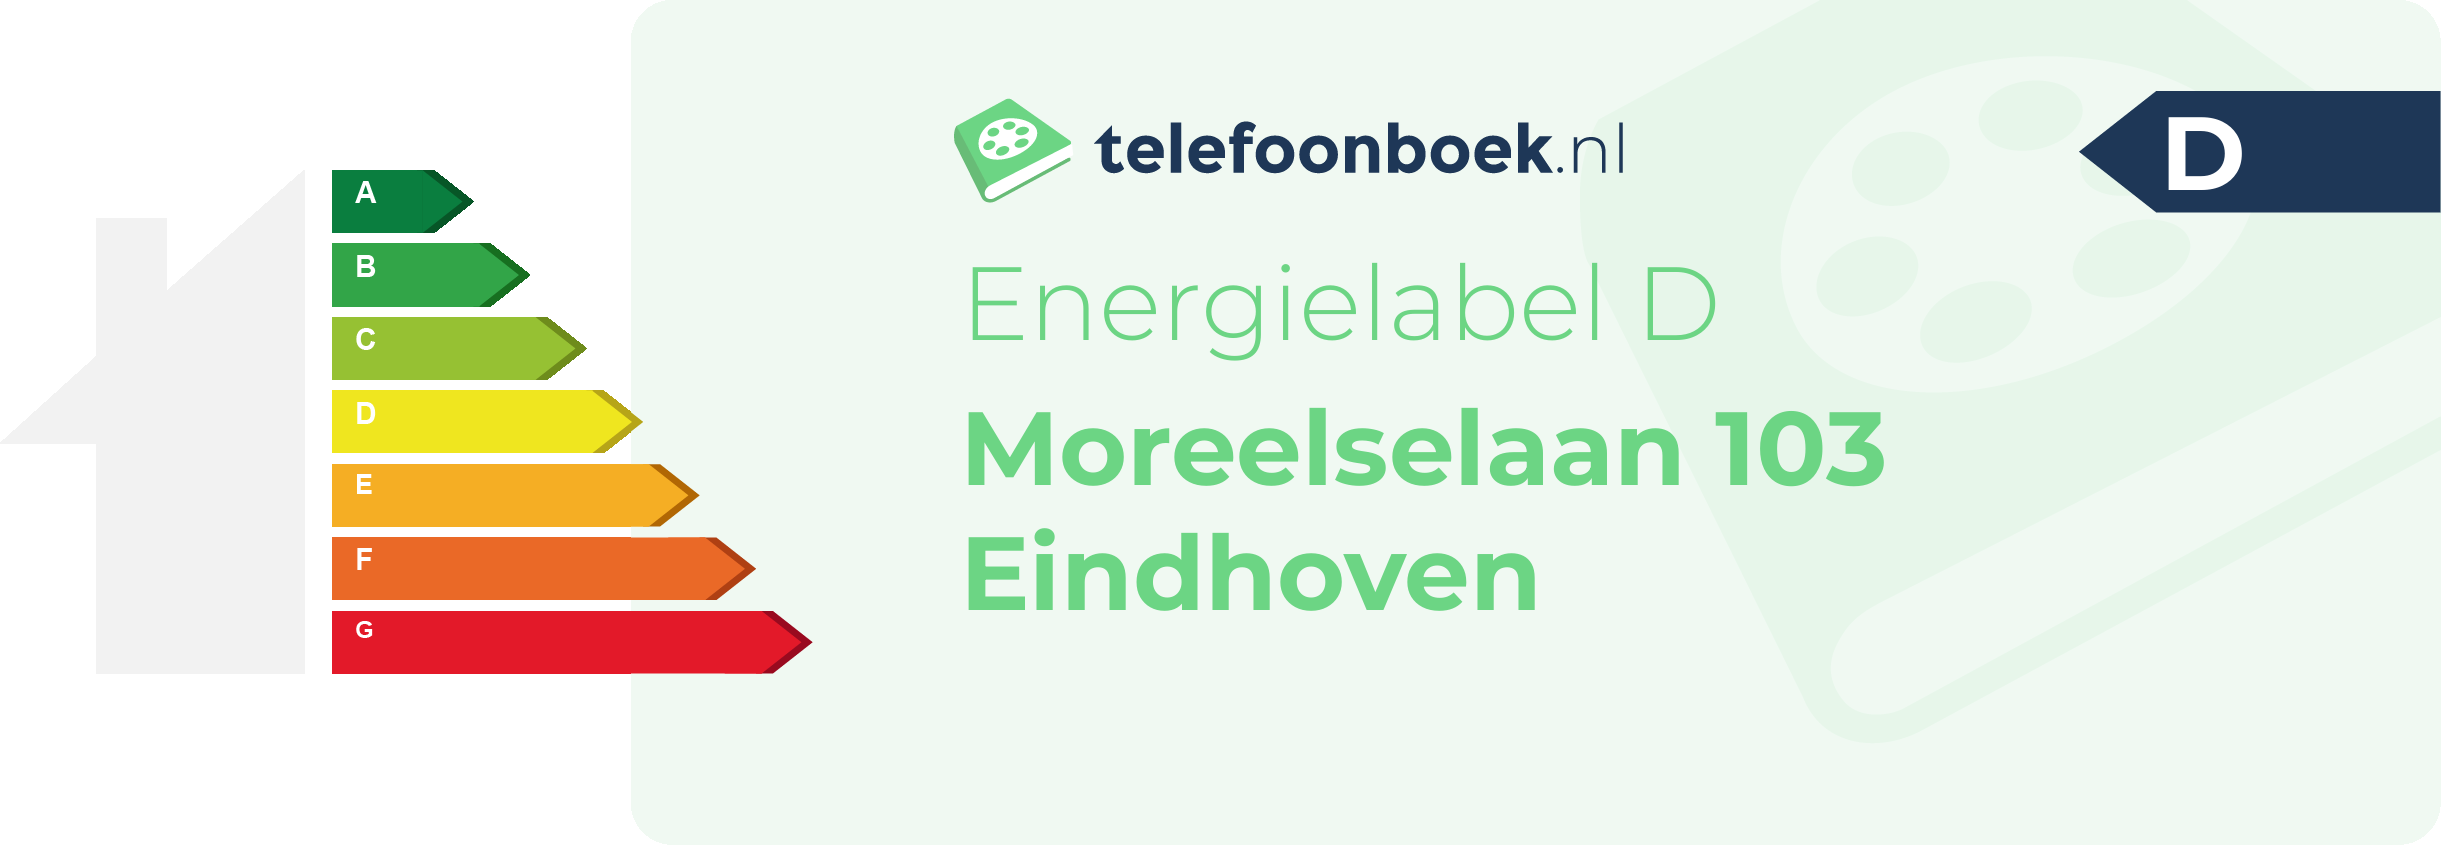 Energielabel Moreelselaan 103 Eindhoven